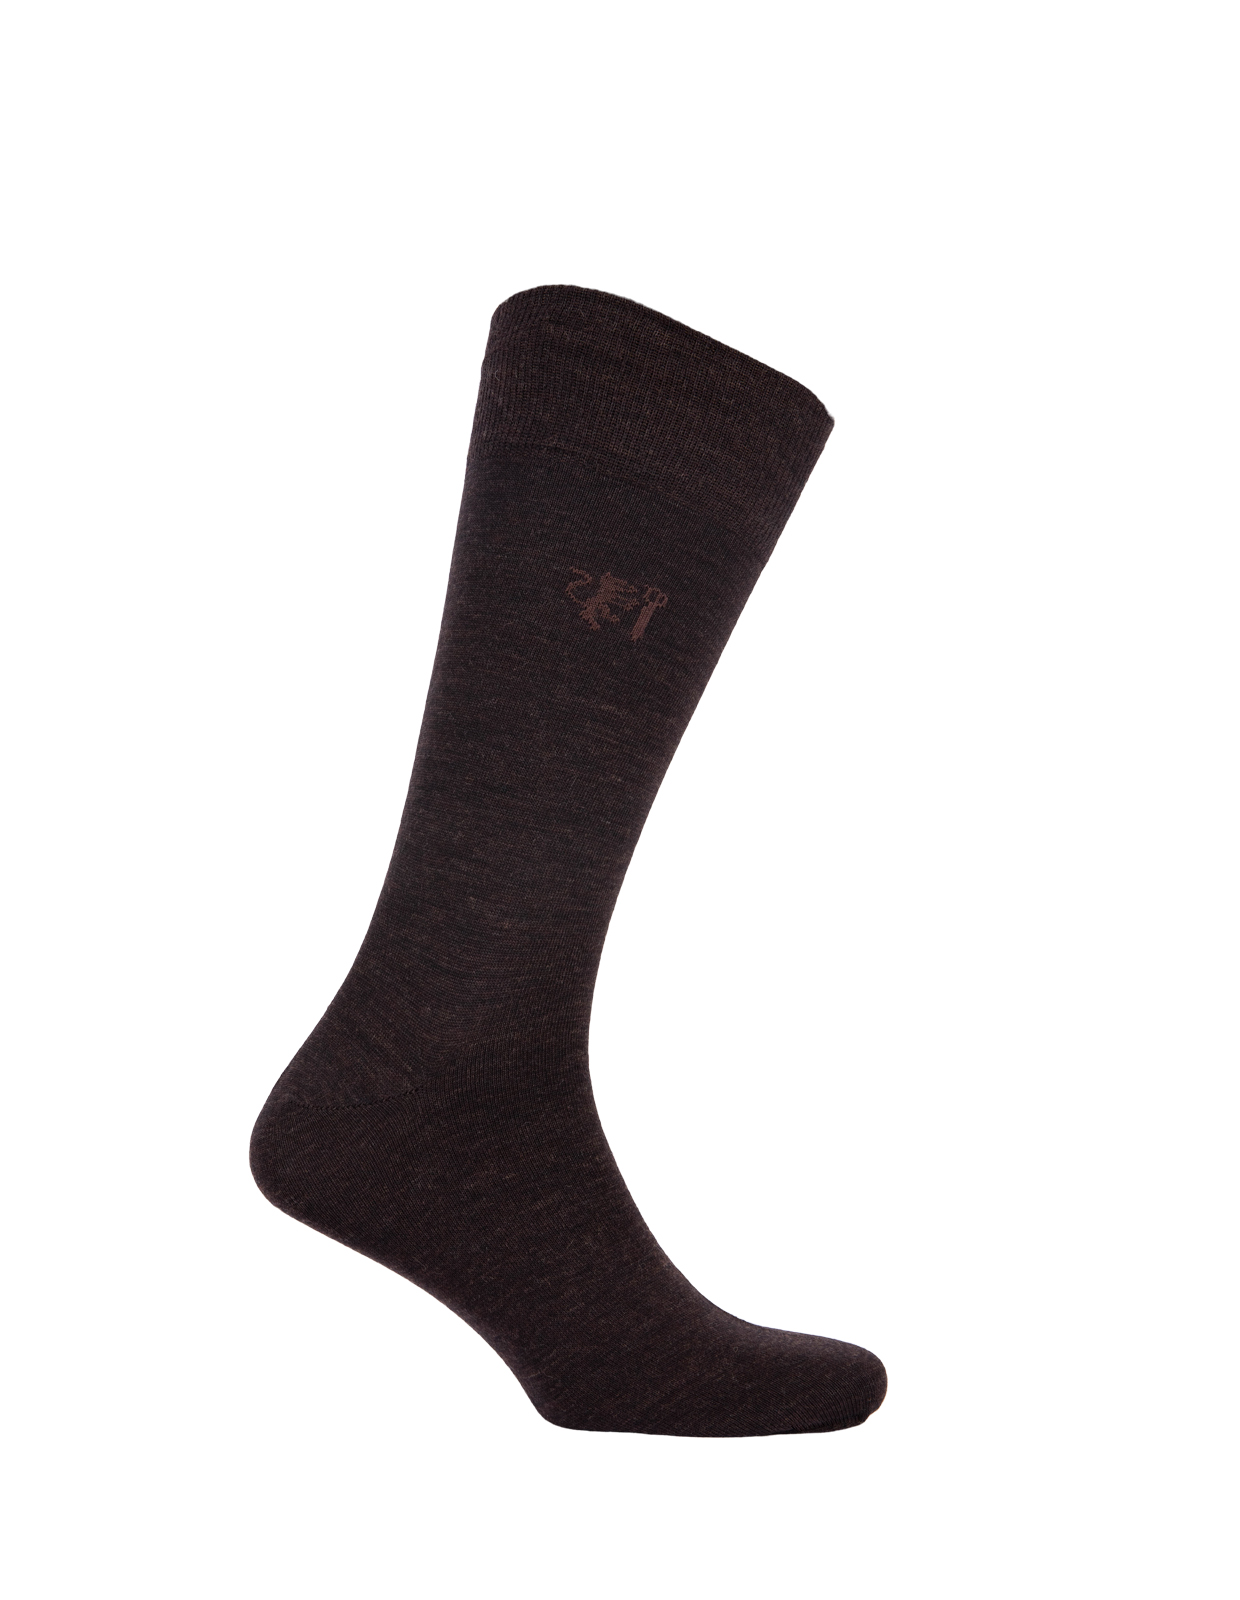 Socks Wool Blend Brown